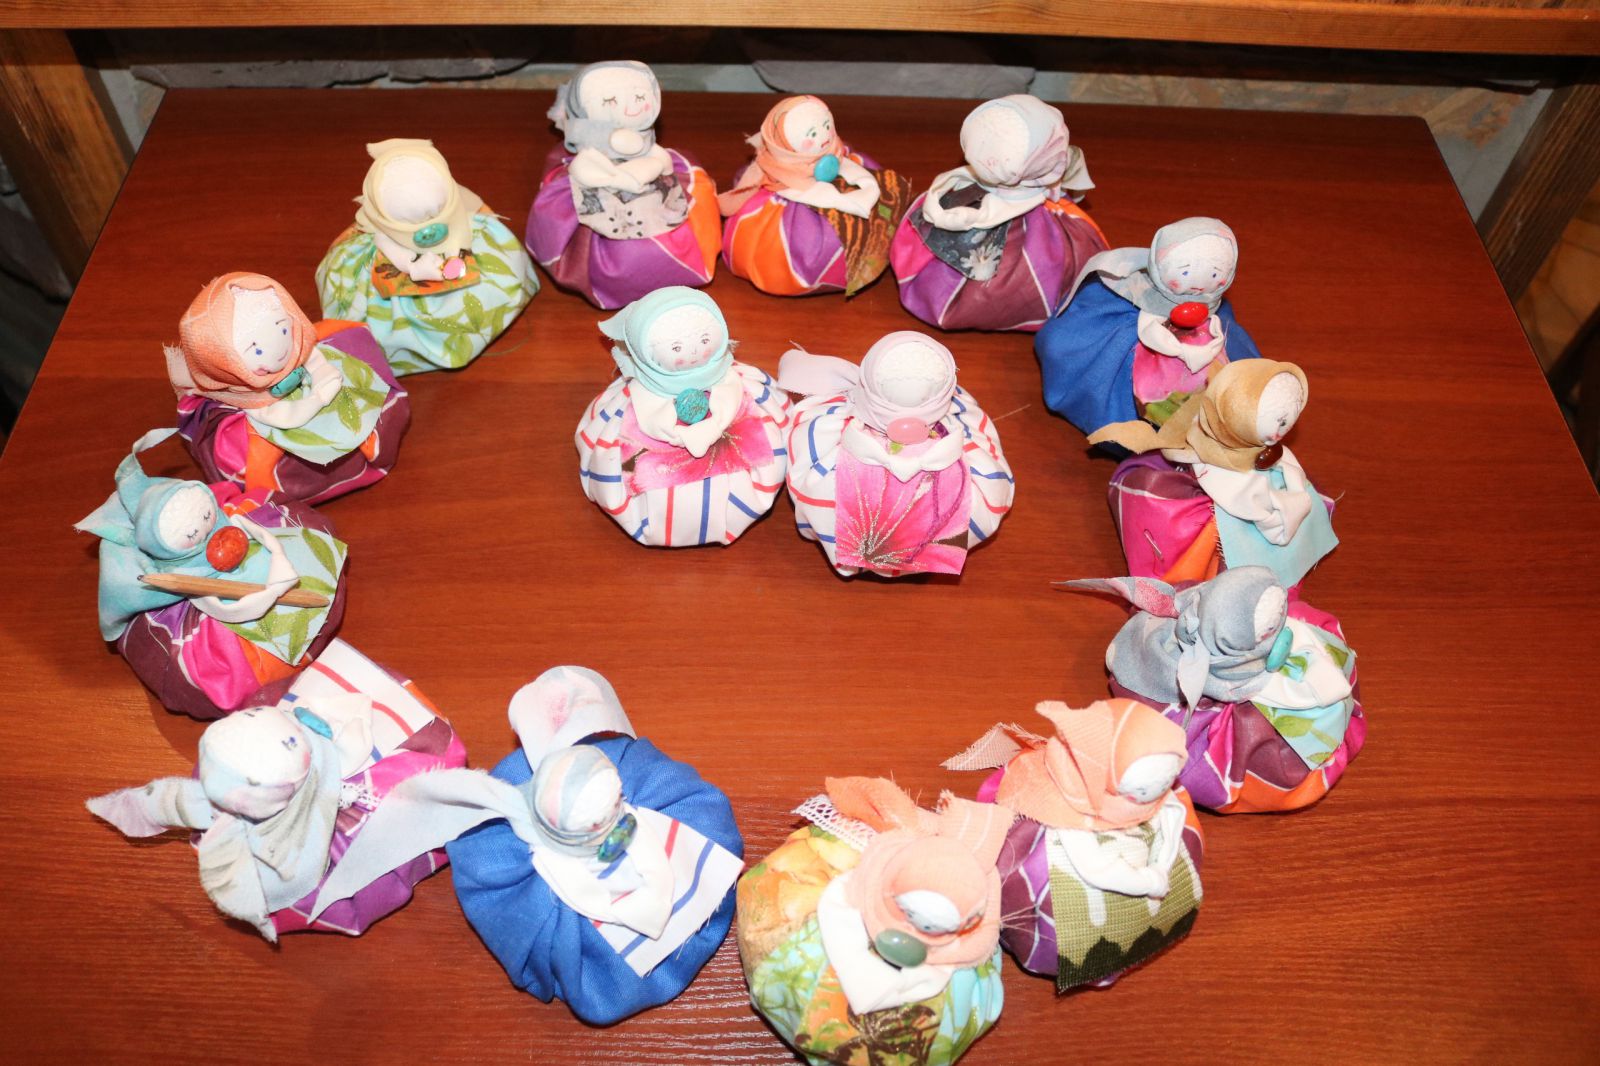 25 октября. Мастер-класс для взрослых и детей  Русская традиционная кукла